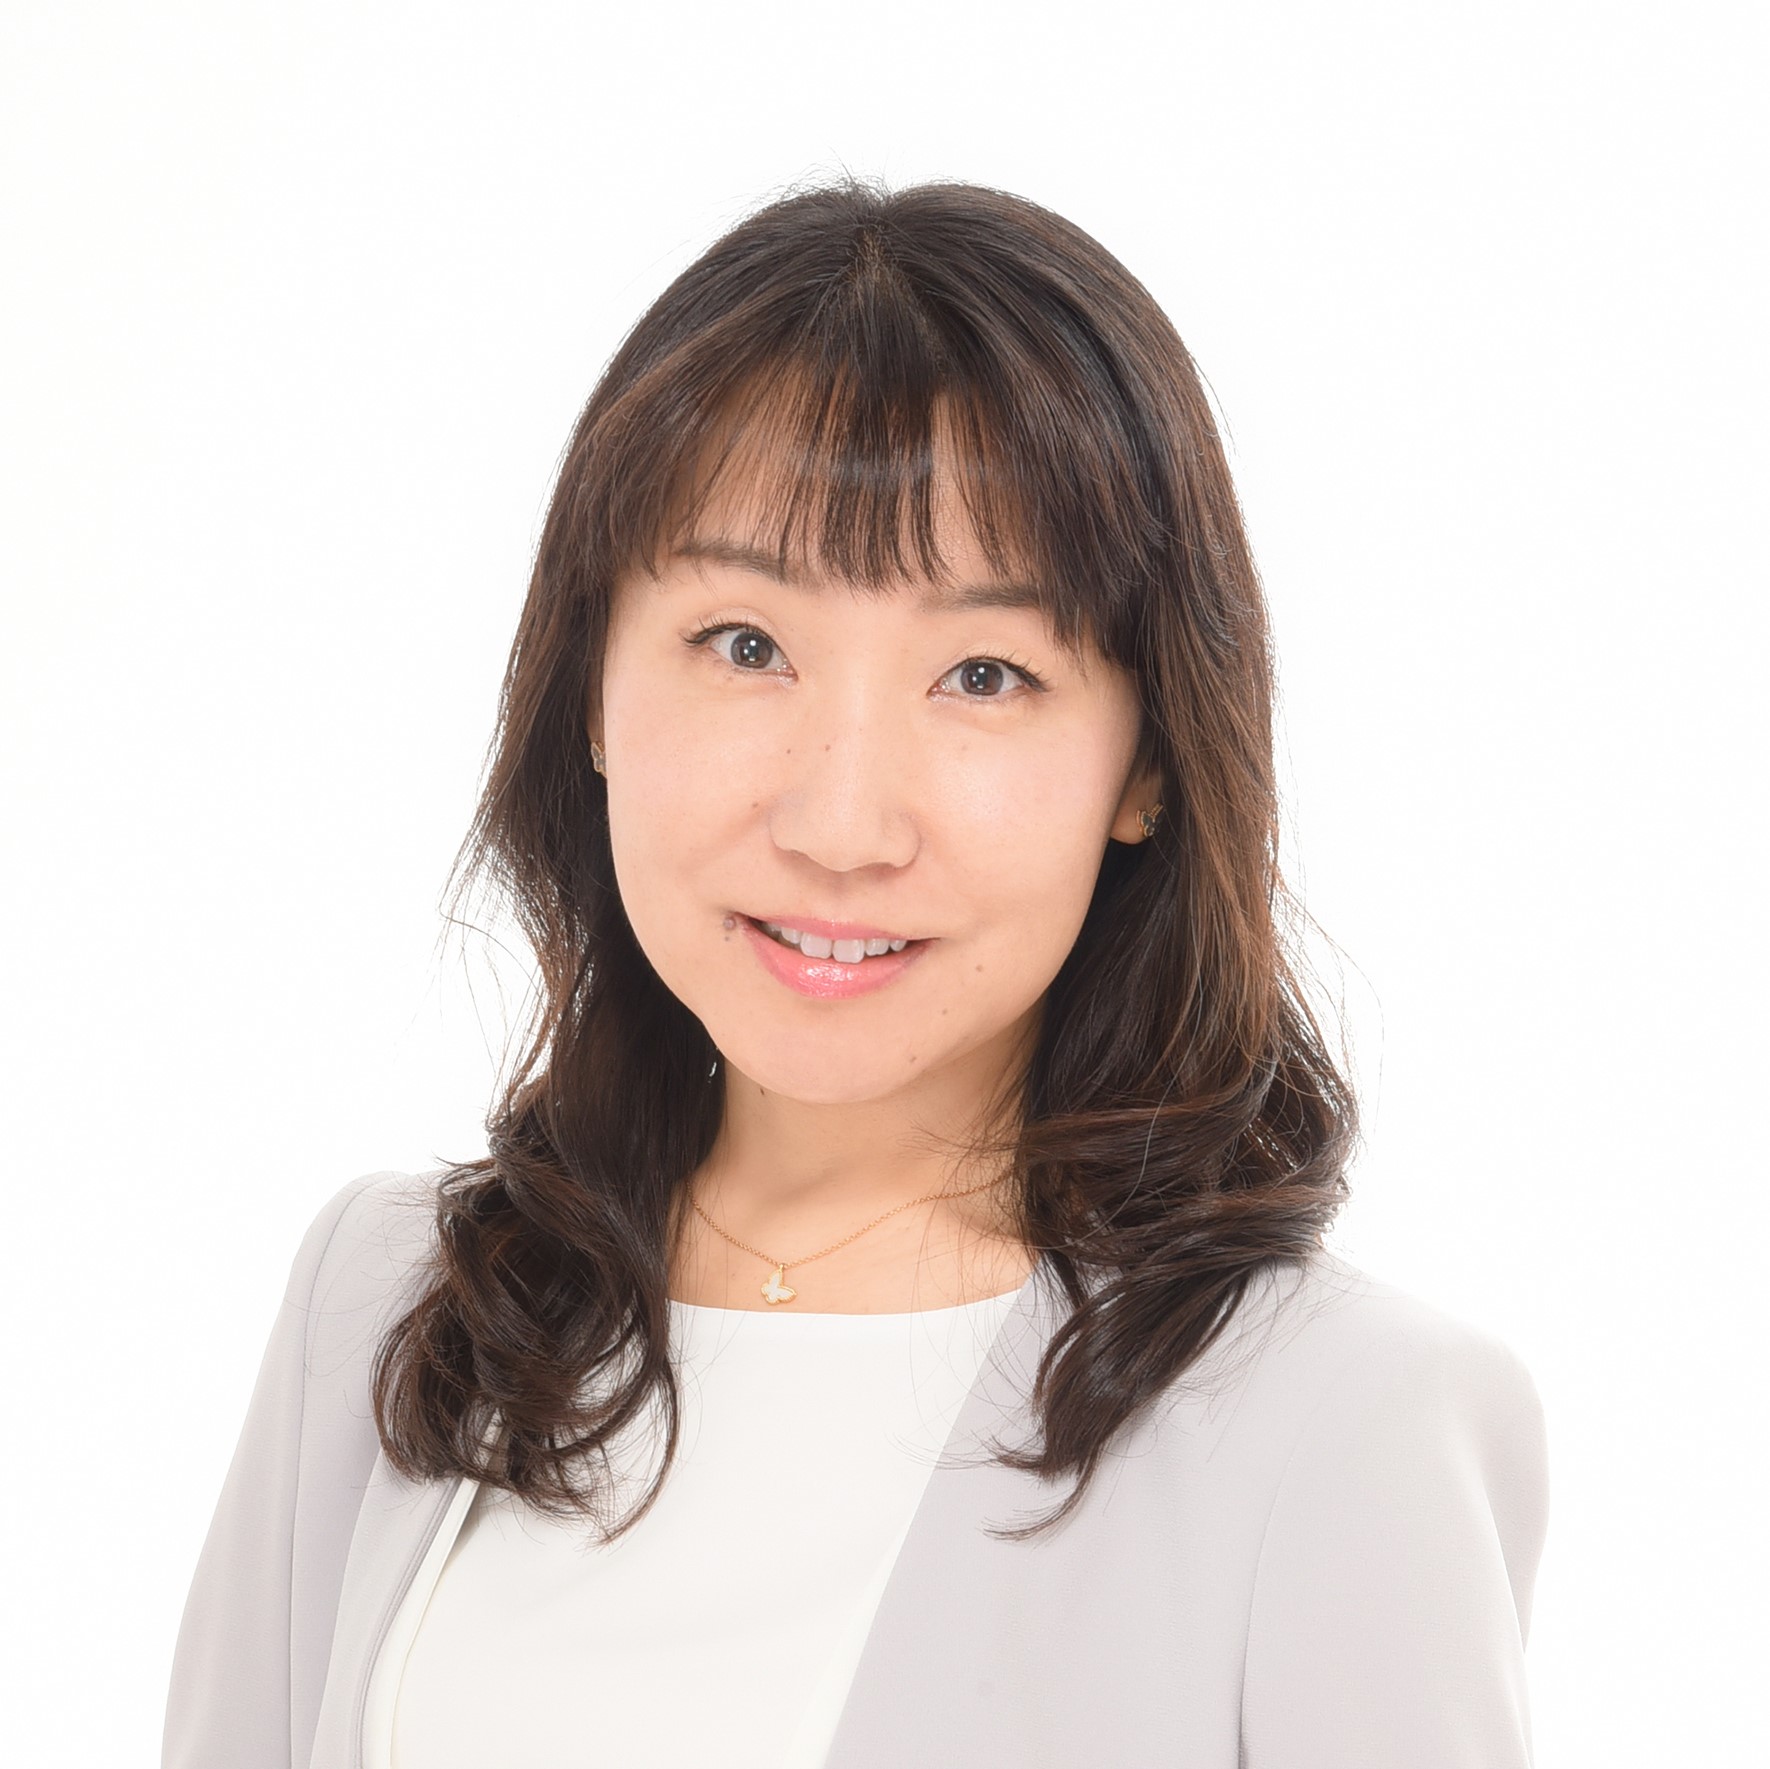 ASIMOV ROBOTICS株式会社 代表取締役CEO 藤森恵子